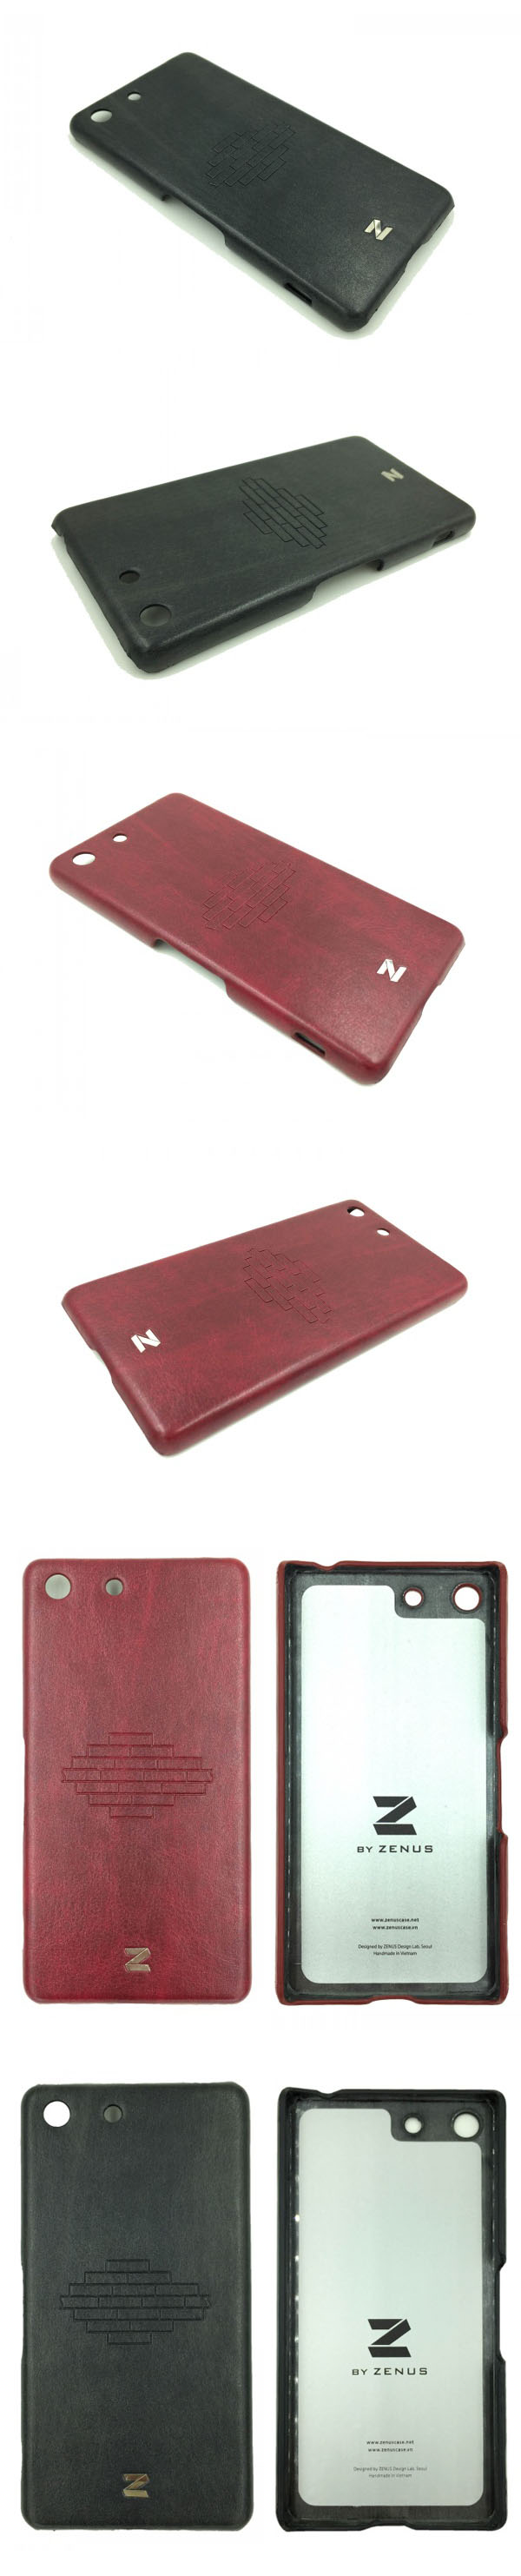 Ốp lưng Sony Xperia M5 Dual Zenus Brick lưng da 333